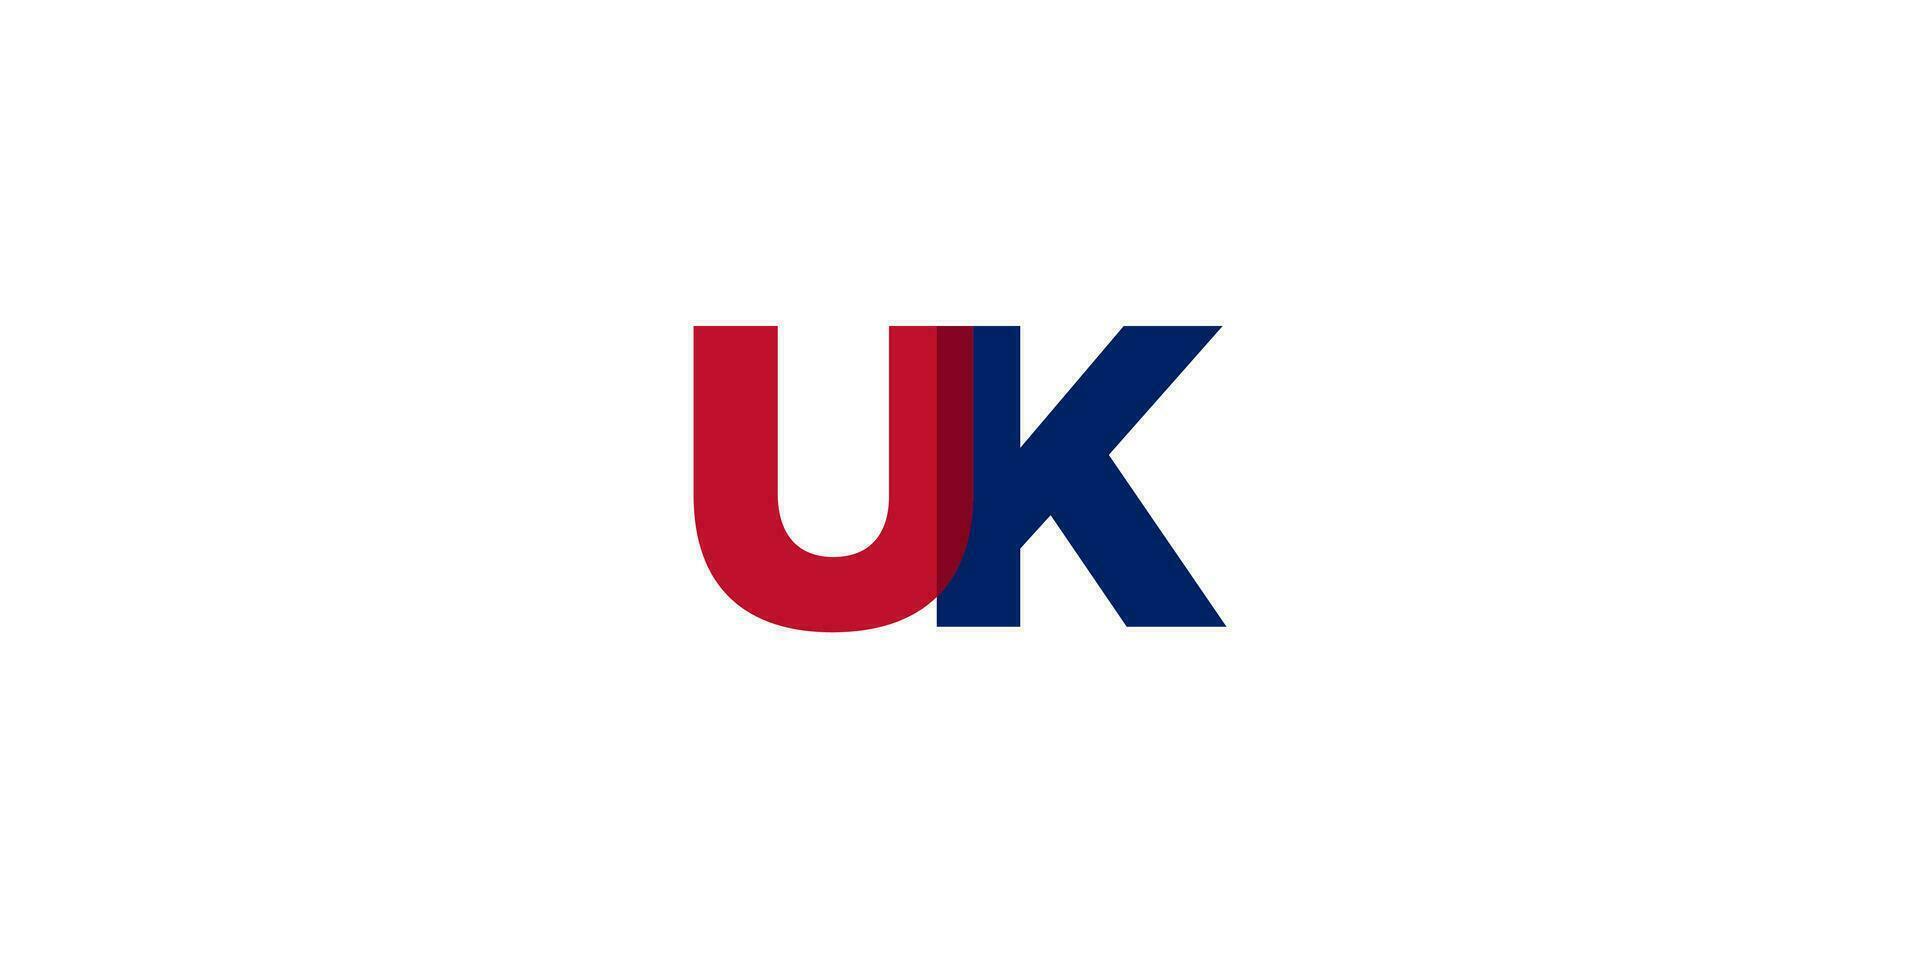 Storbritannien stad i de förenad rike design funktioner en geometrisk stil illustration med djärv typografi i en modern font på vit bakgrund. vektor